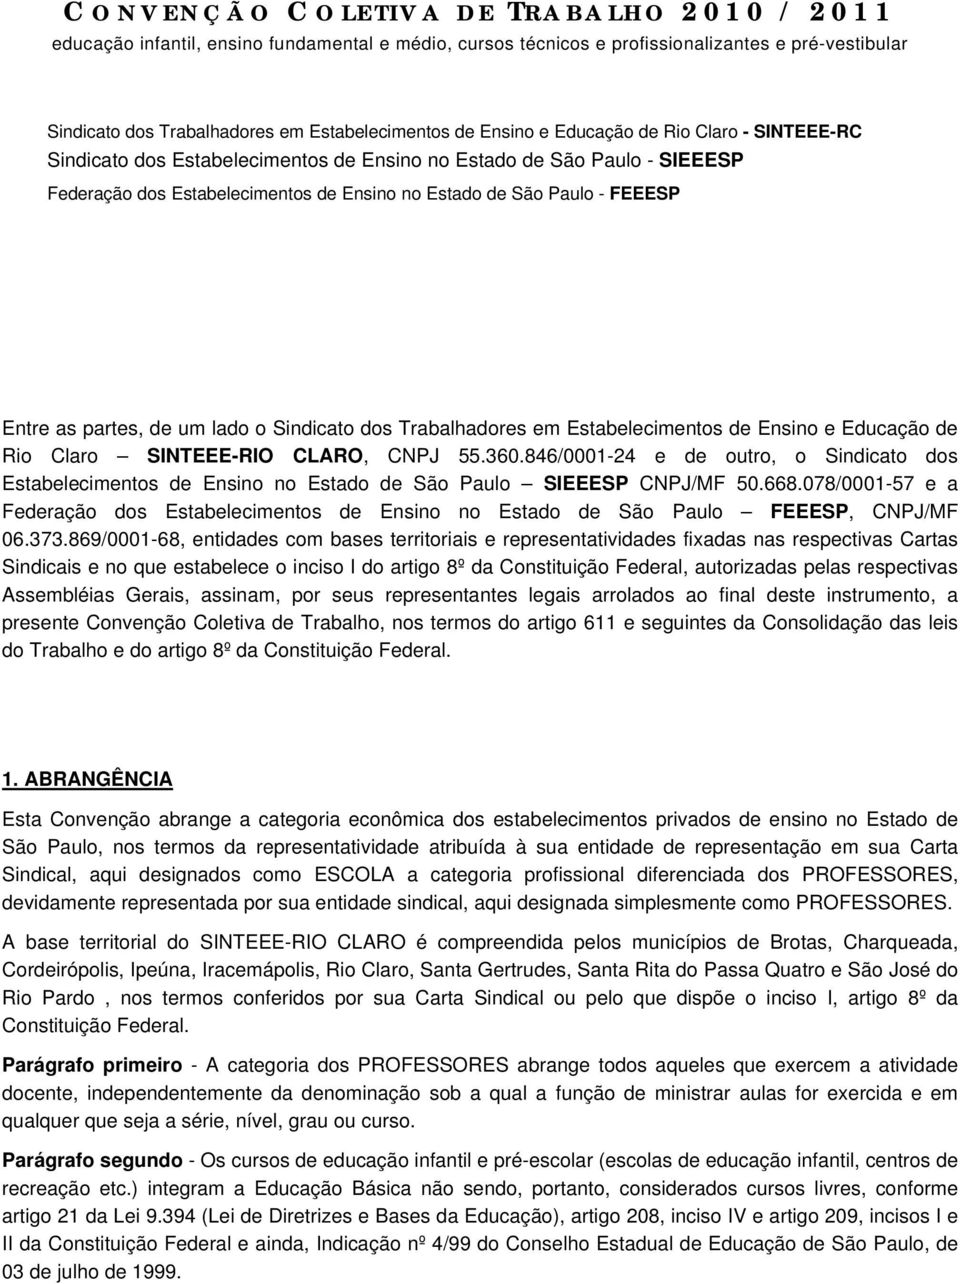 partes, de um lado o Sindicato dos Trabalhadores em Estabelecimentos de Ensino e Educação de Rio Claro SINTEEE-RIO CLARO, CNPJ 55.360.